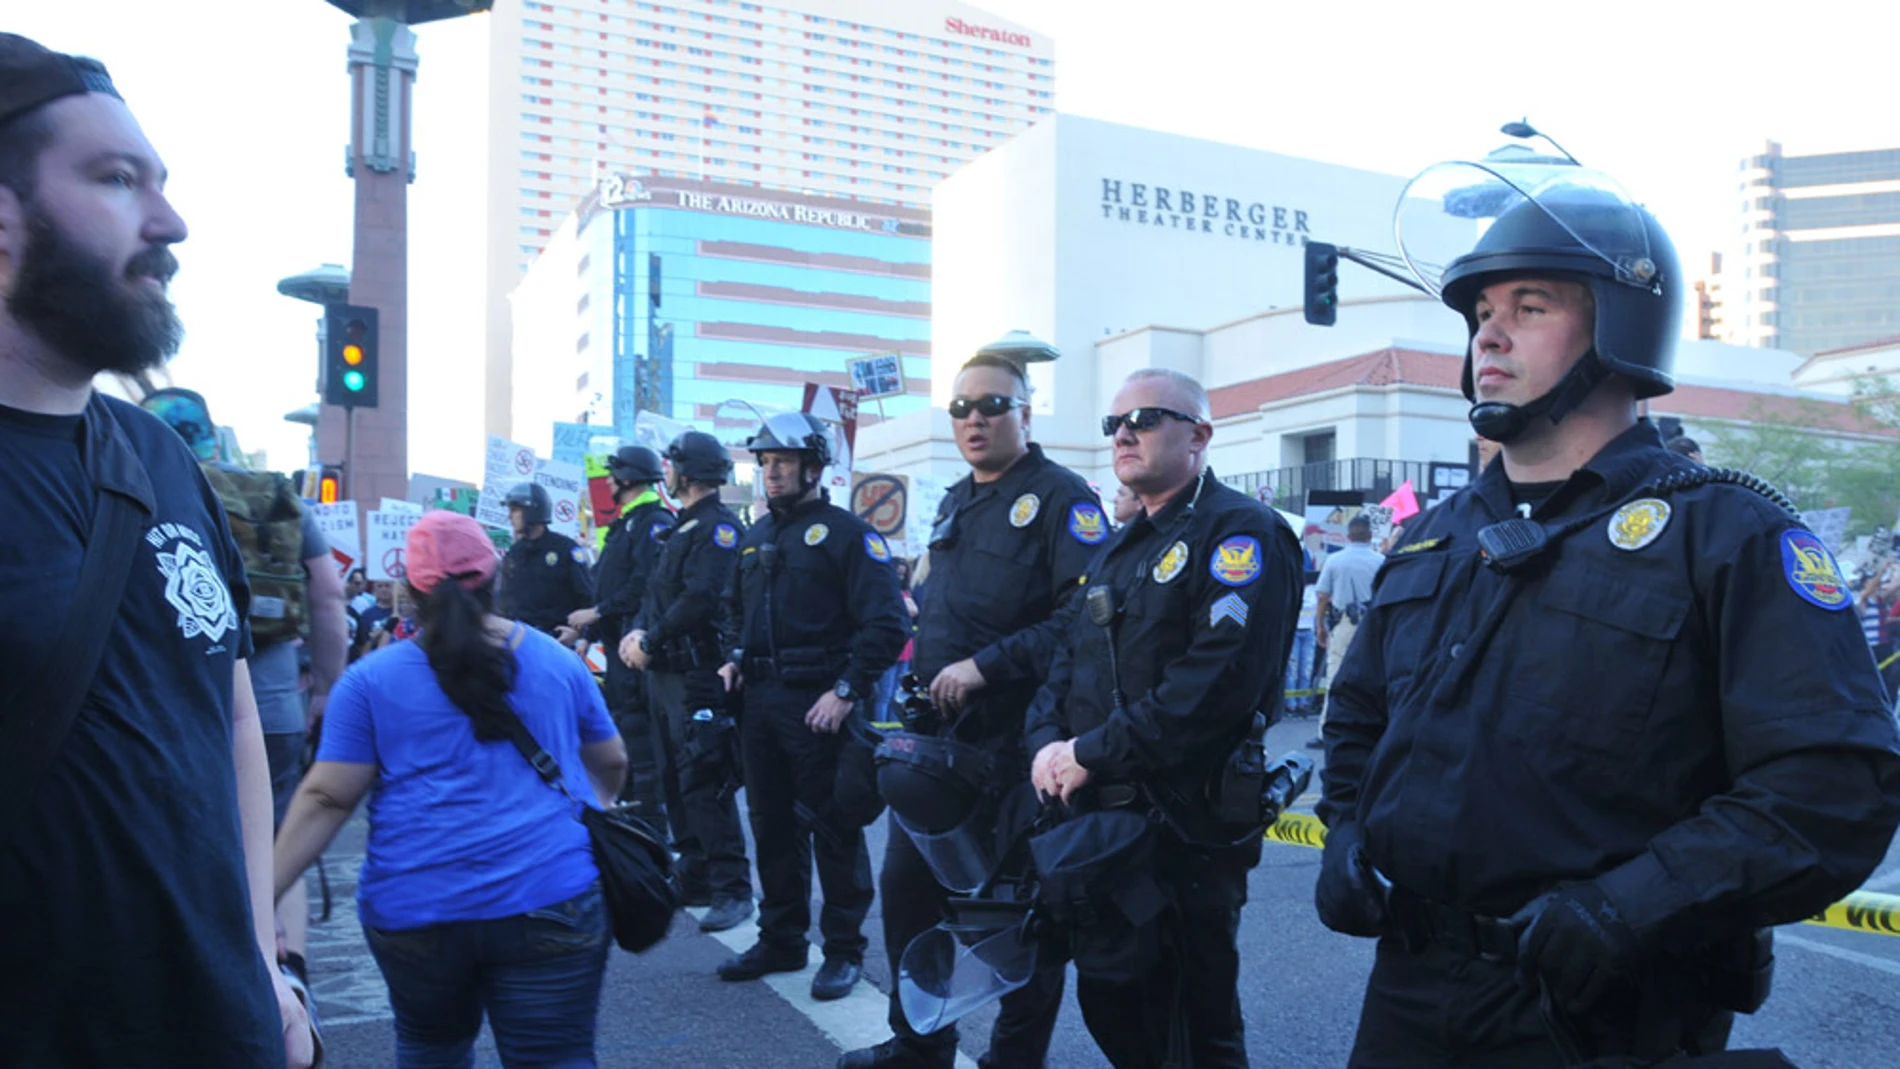  La policía monta guardia durante una protesta contra Donald Trump en Phoenix, Arizona